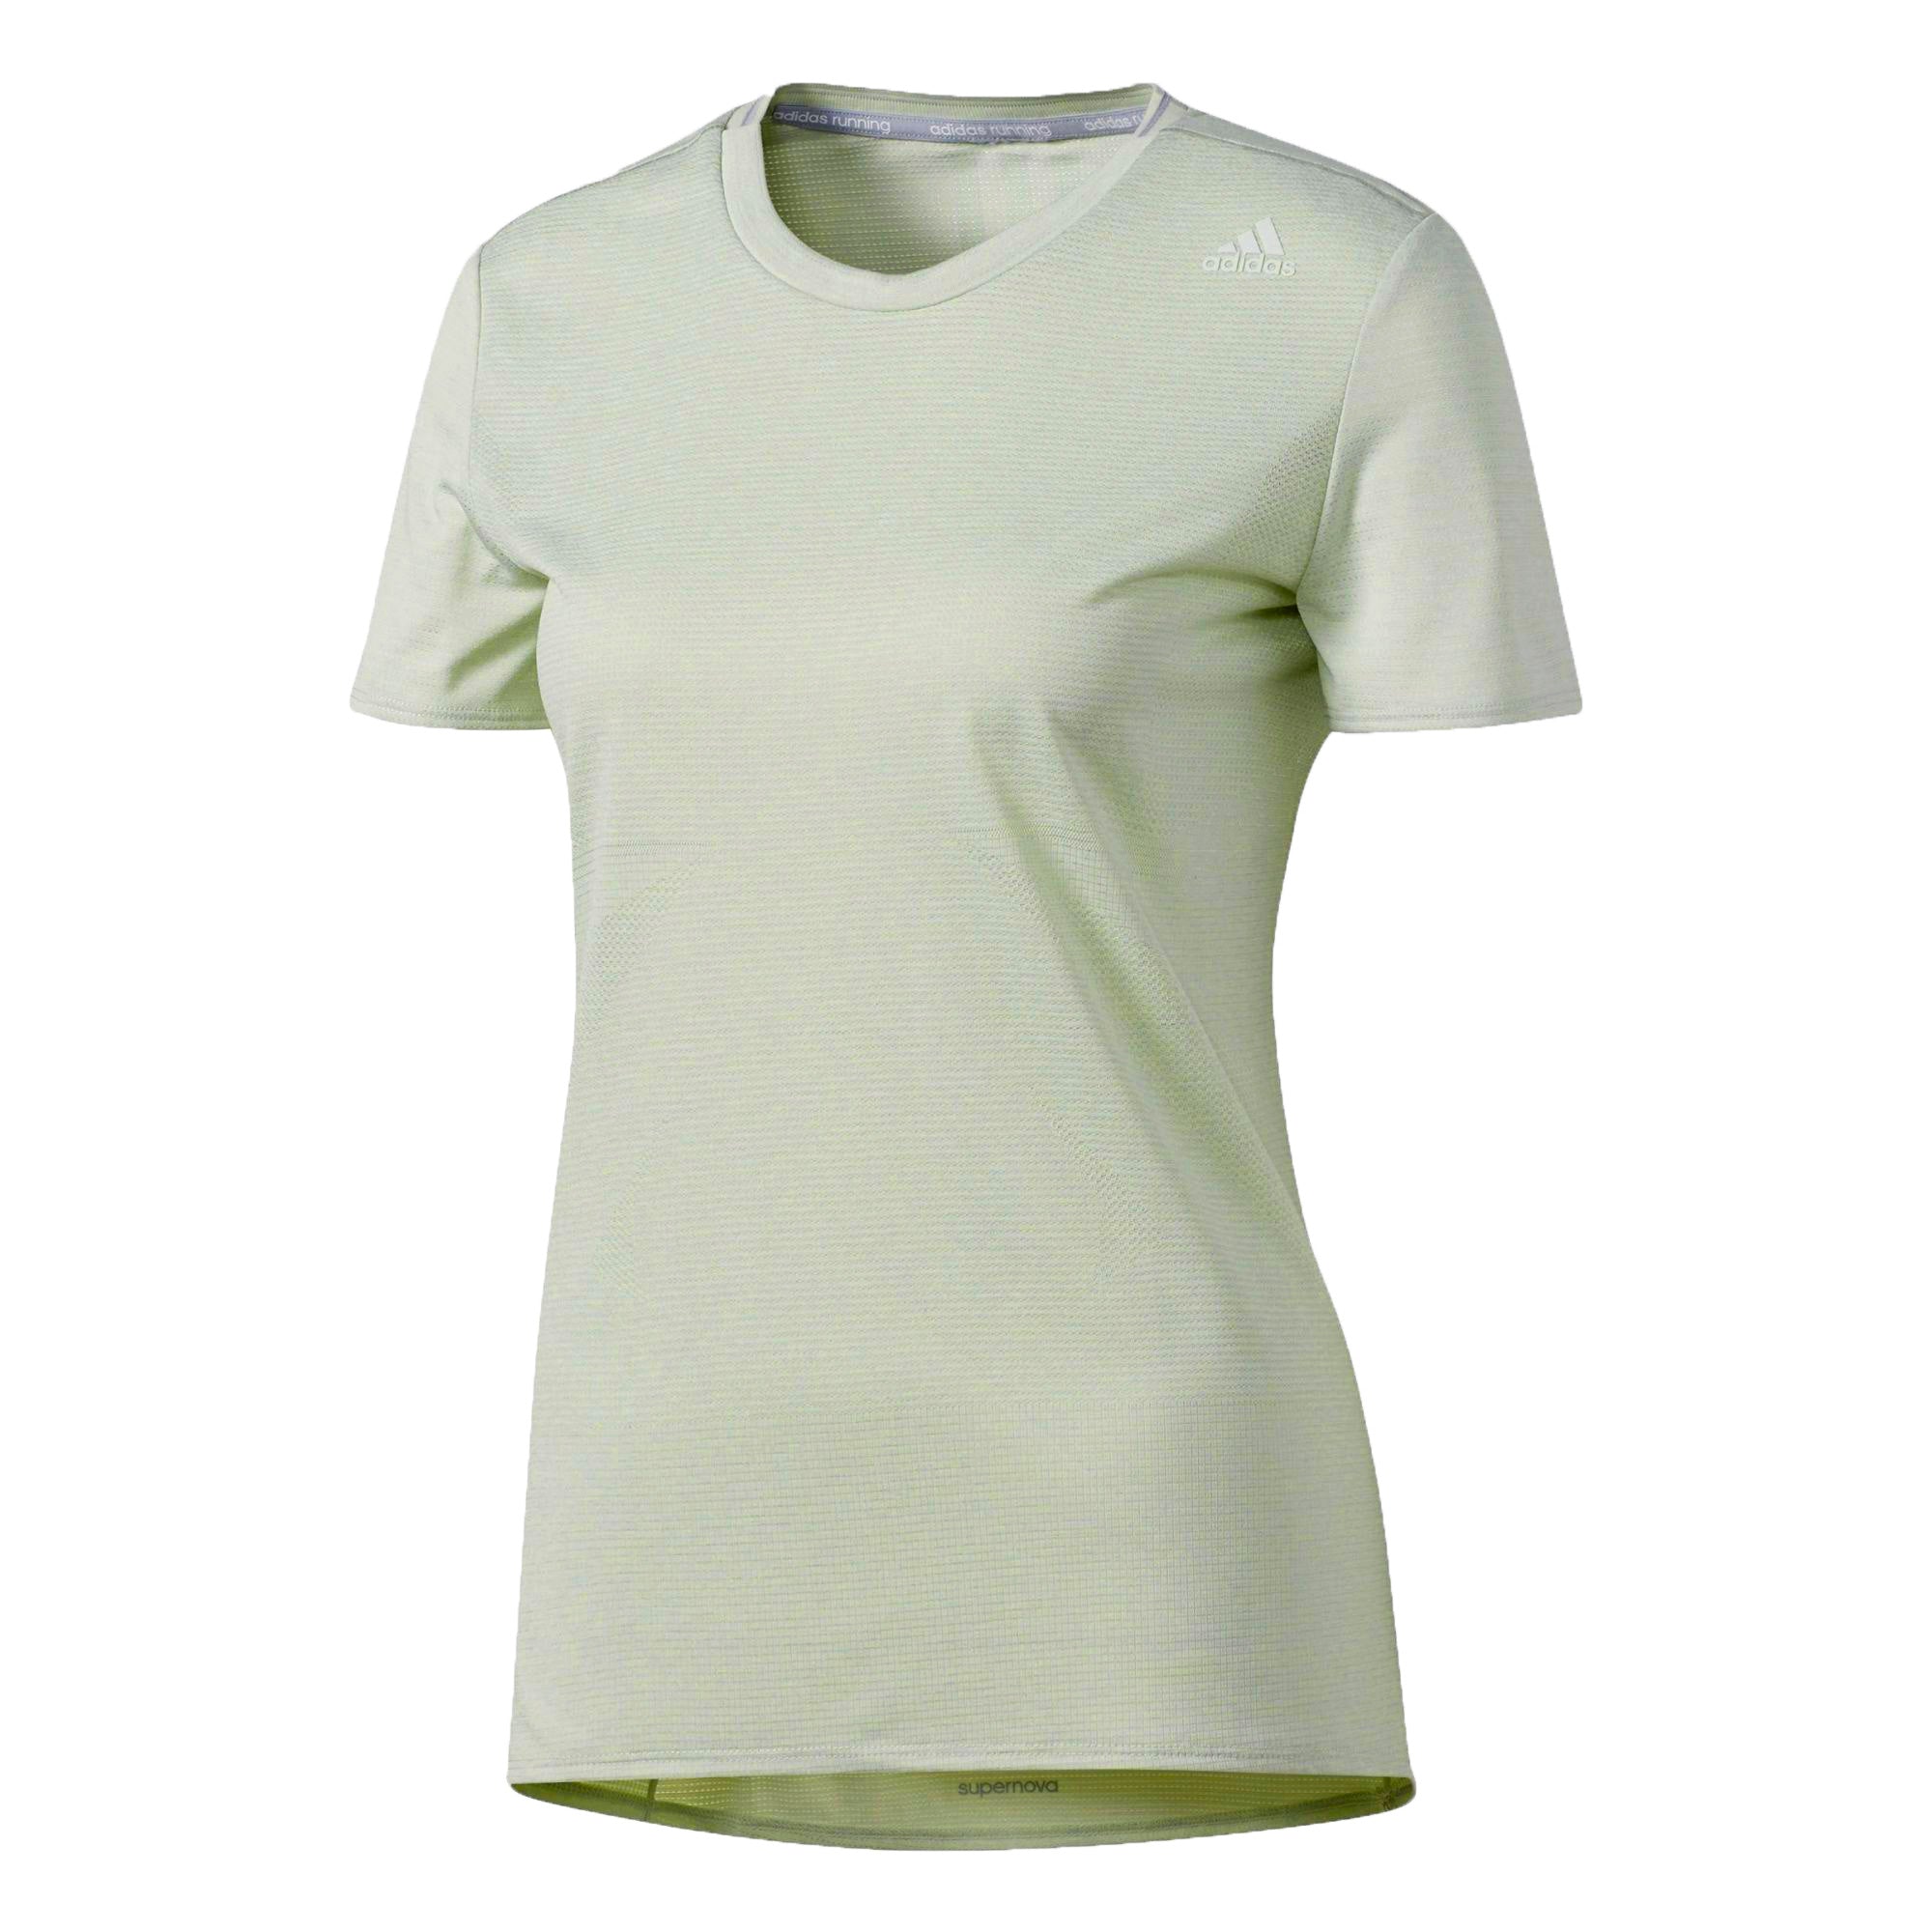 Adidas Women's Supernova T-shirt - linen green S97960